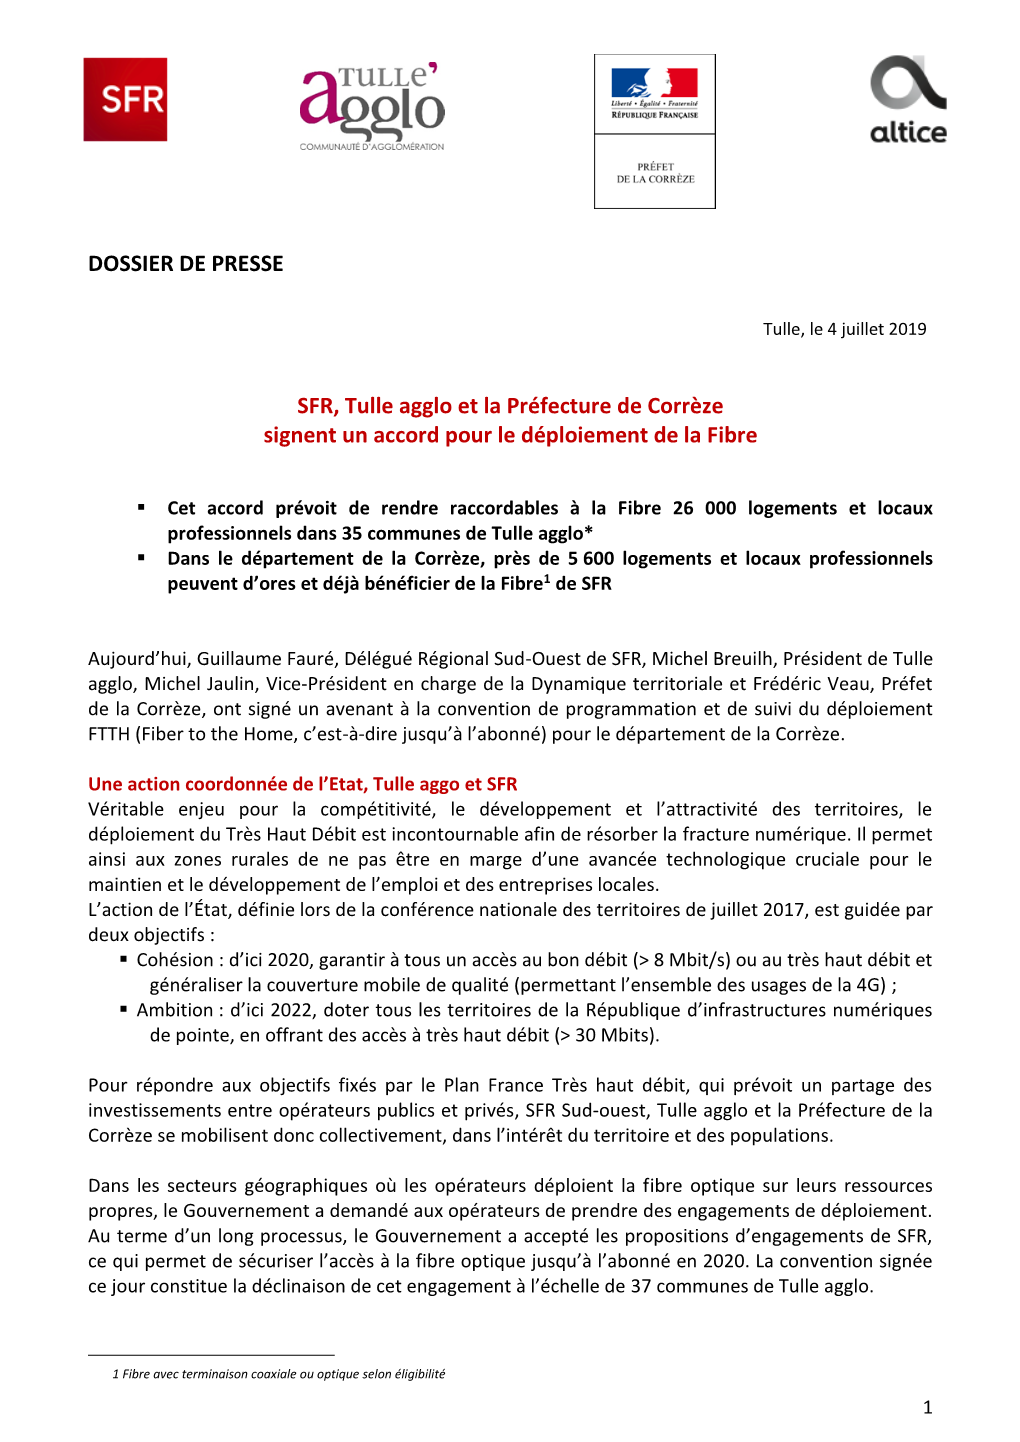 SFR, Tulle Agglo Et La Préfecture De Corrèze Signent Un Accord Pour Le Déploiement De La Fibre